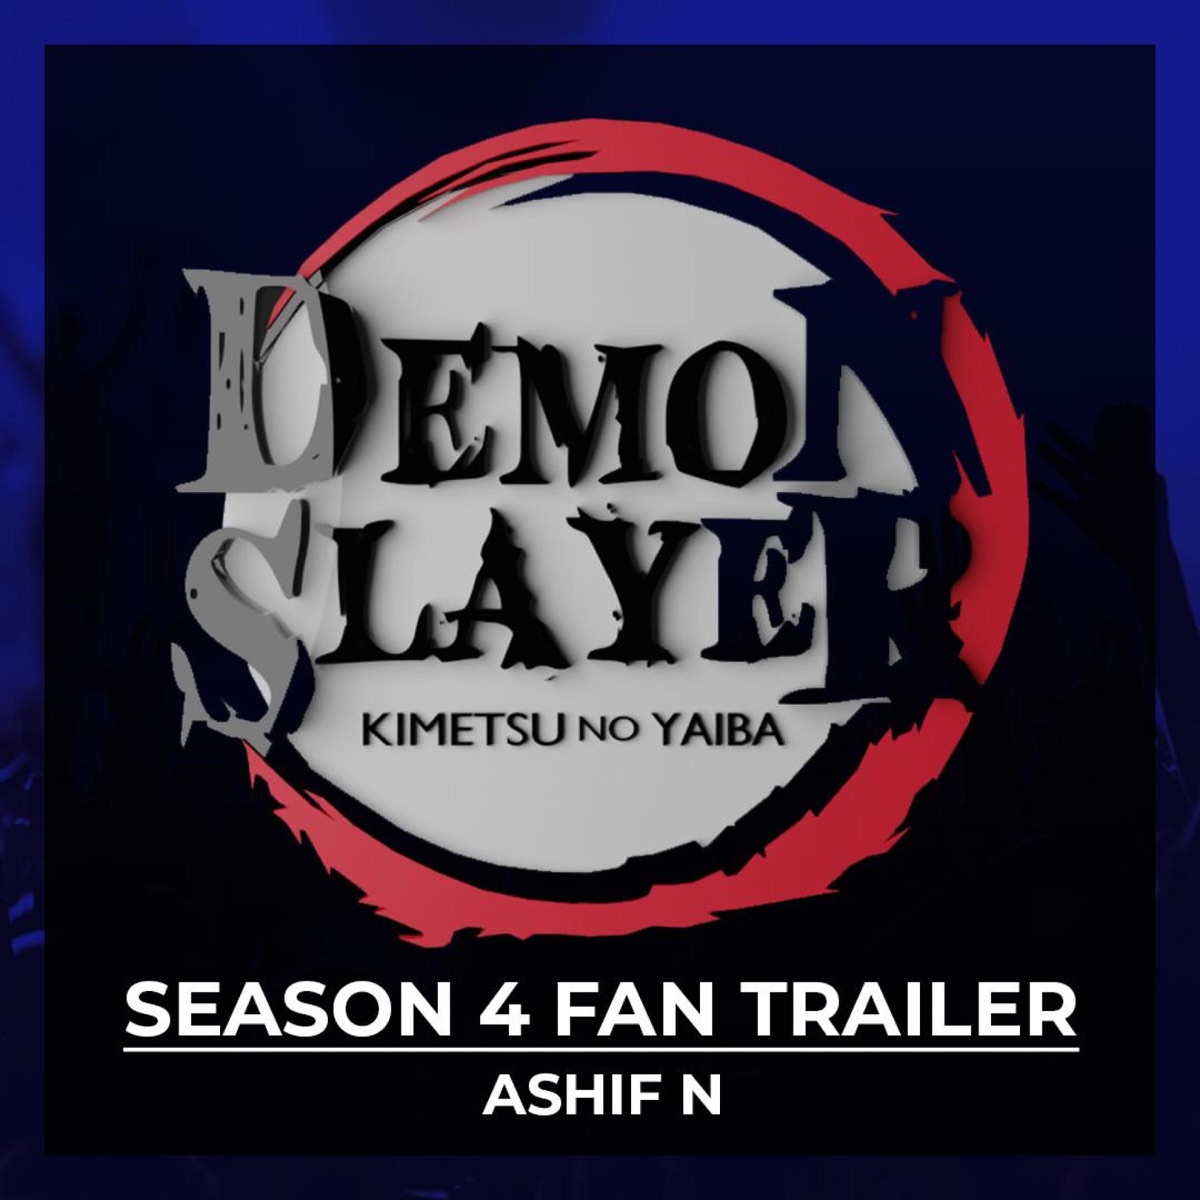 Demon Slayer : Kimetsu no yaiba Season 4 (Infinity Castle Arc) Trailer